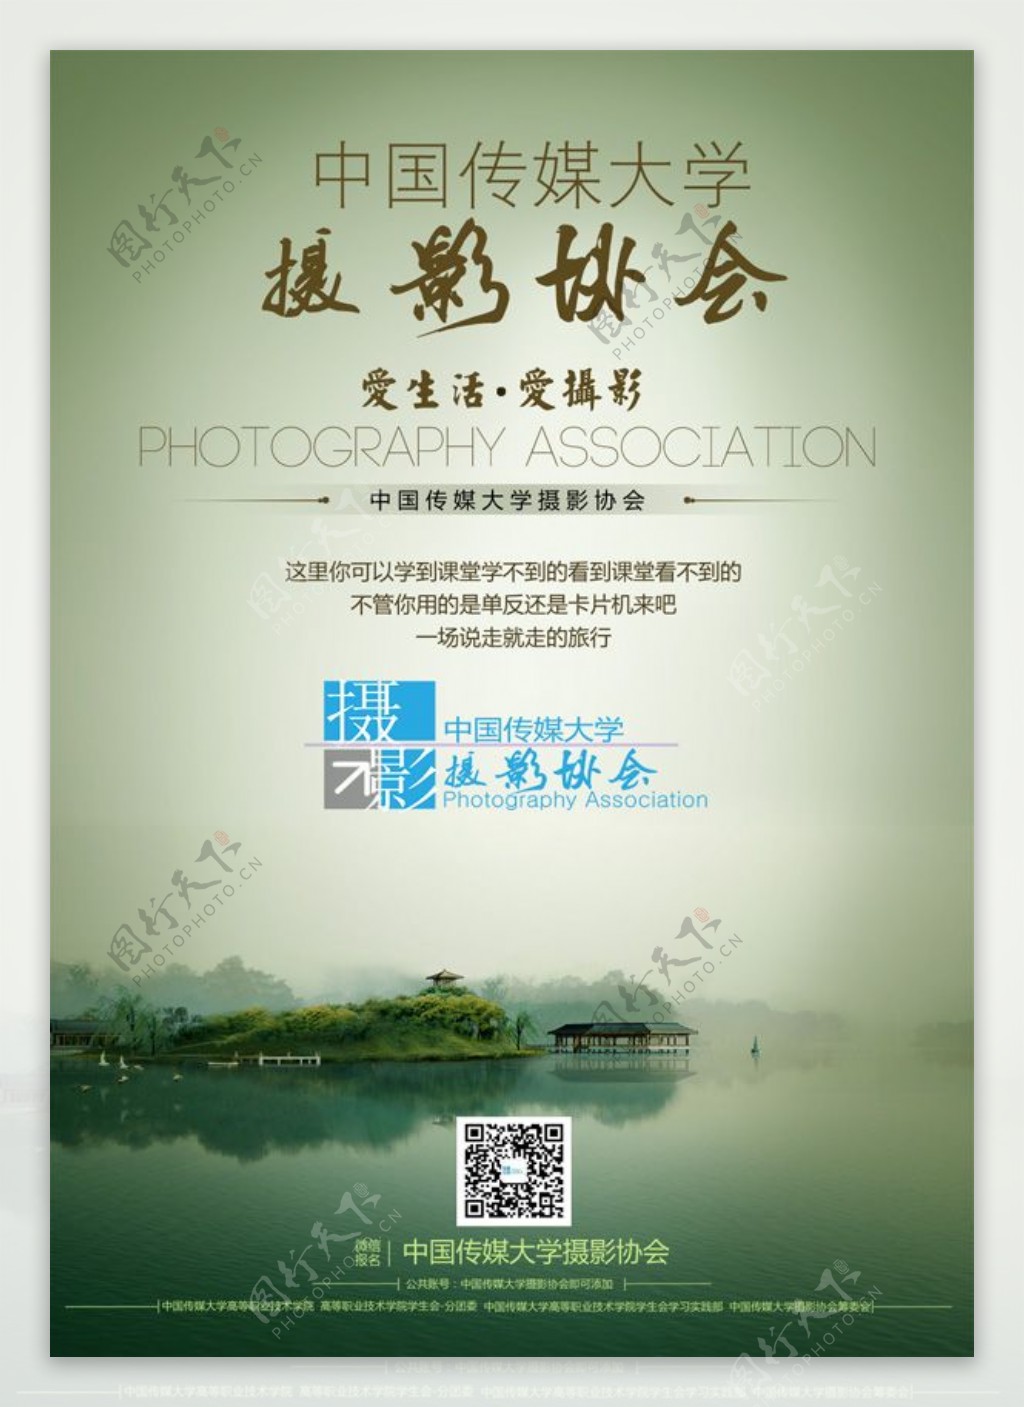 中国传媒大学摄影协会